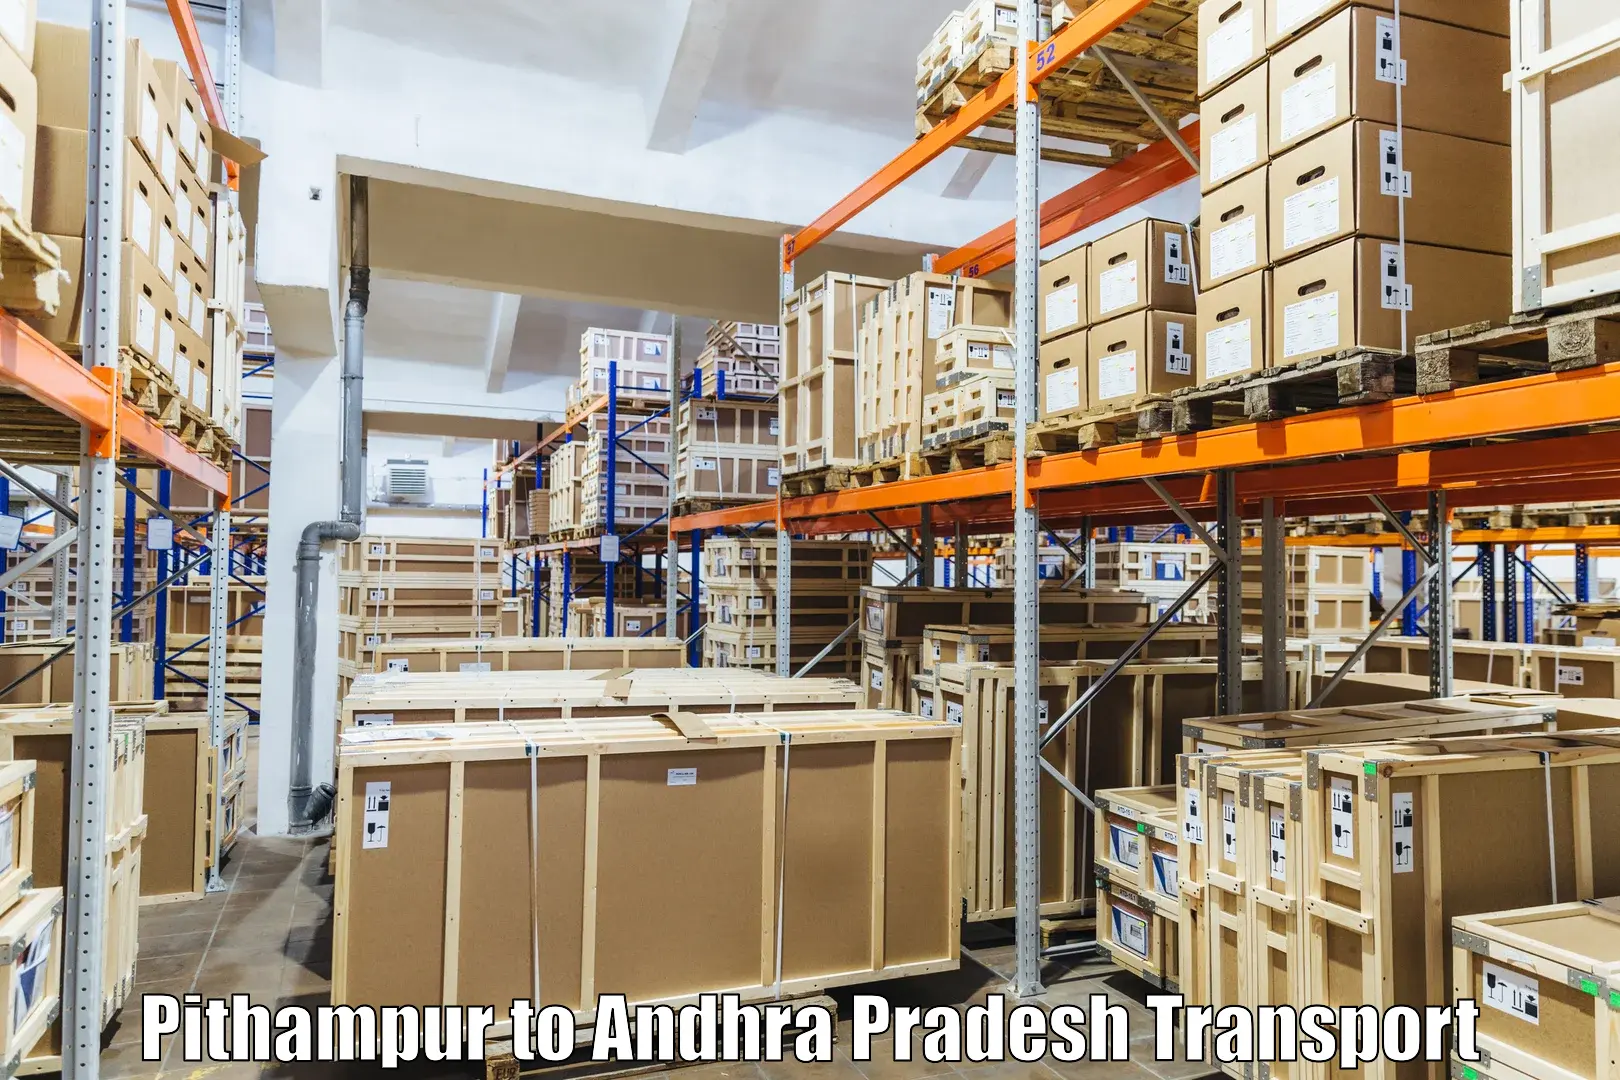 Air cargo transport services Pithampur to B Kothakota